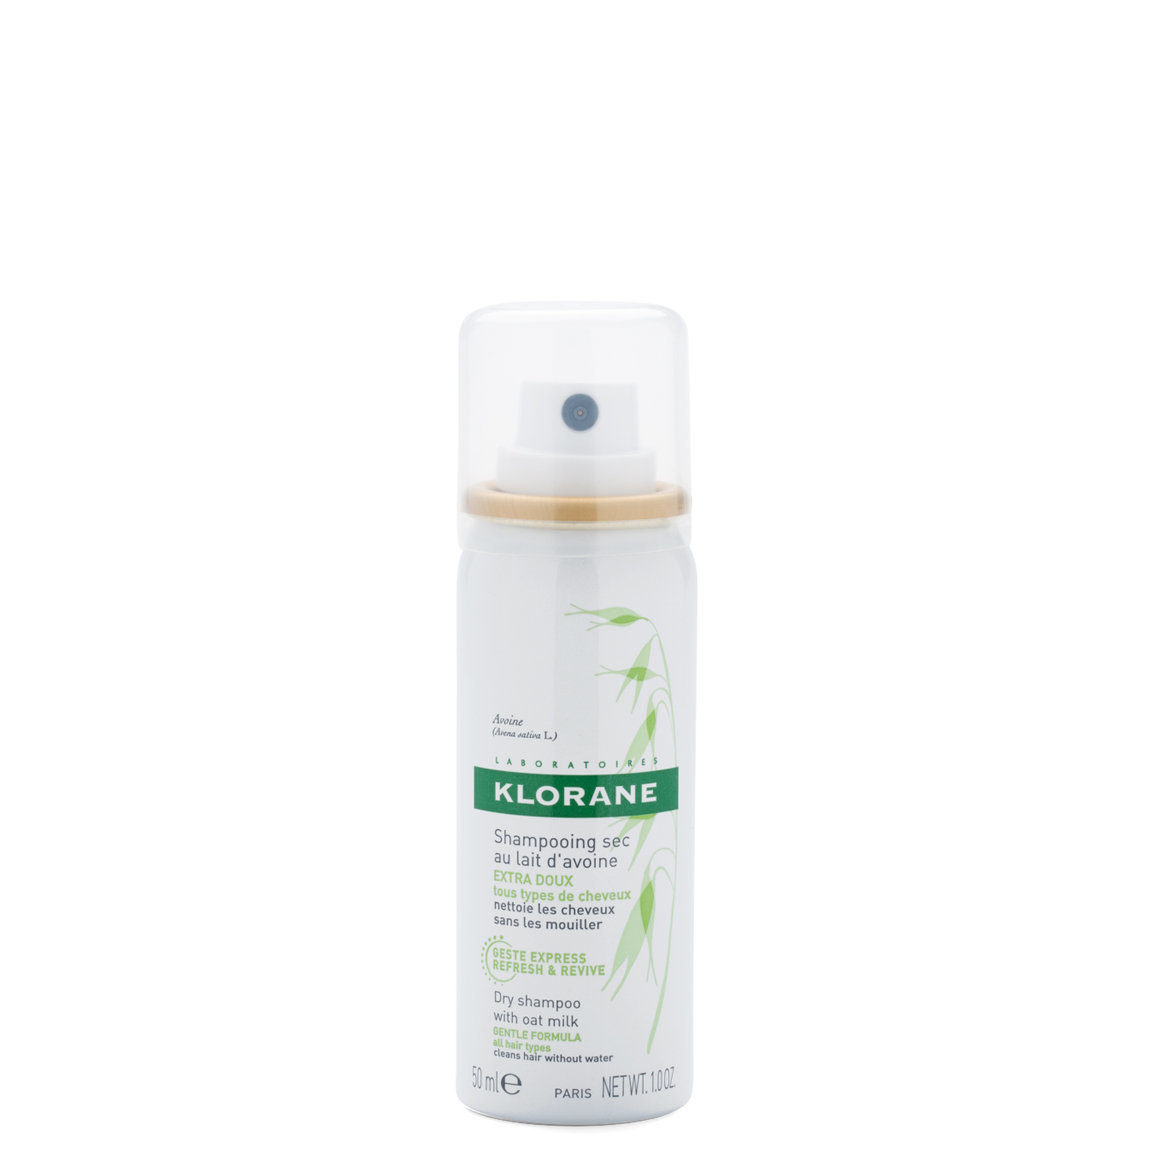 Klorane Dry Shampoo with Oat Milk Aerosol 1.0 oz alternative view 1 - product swatch.